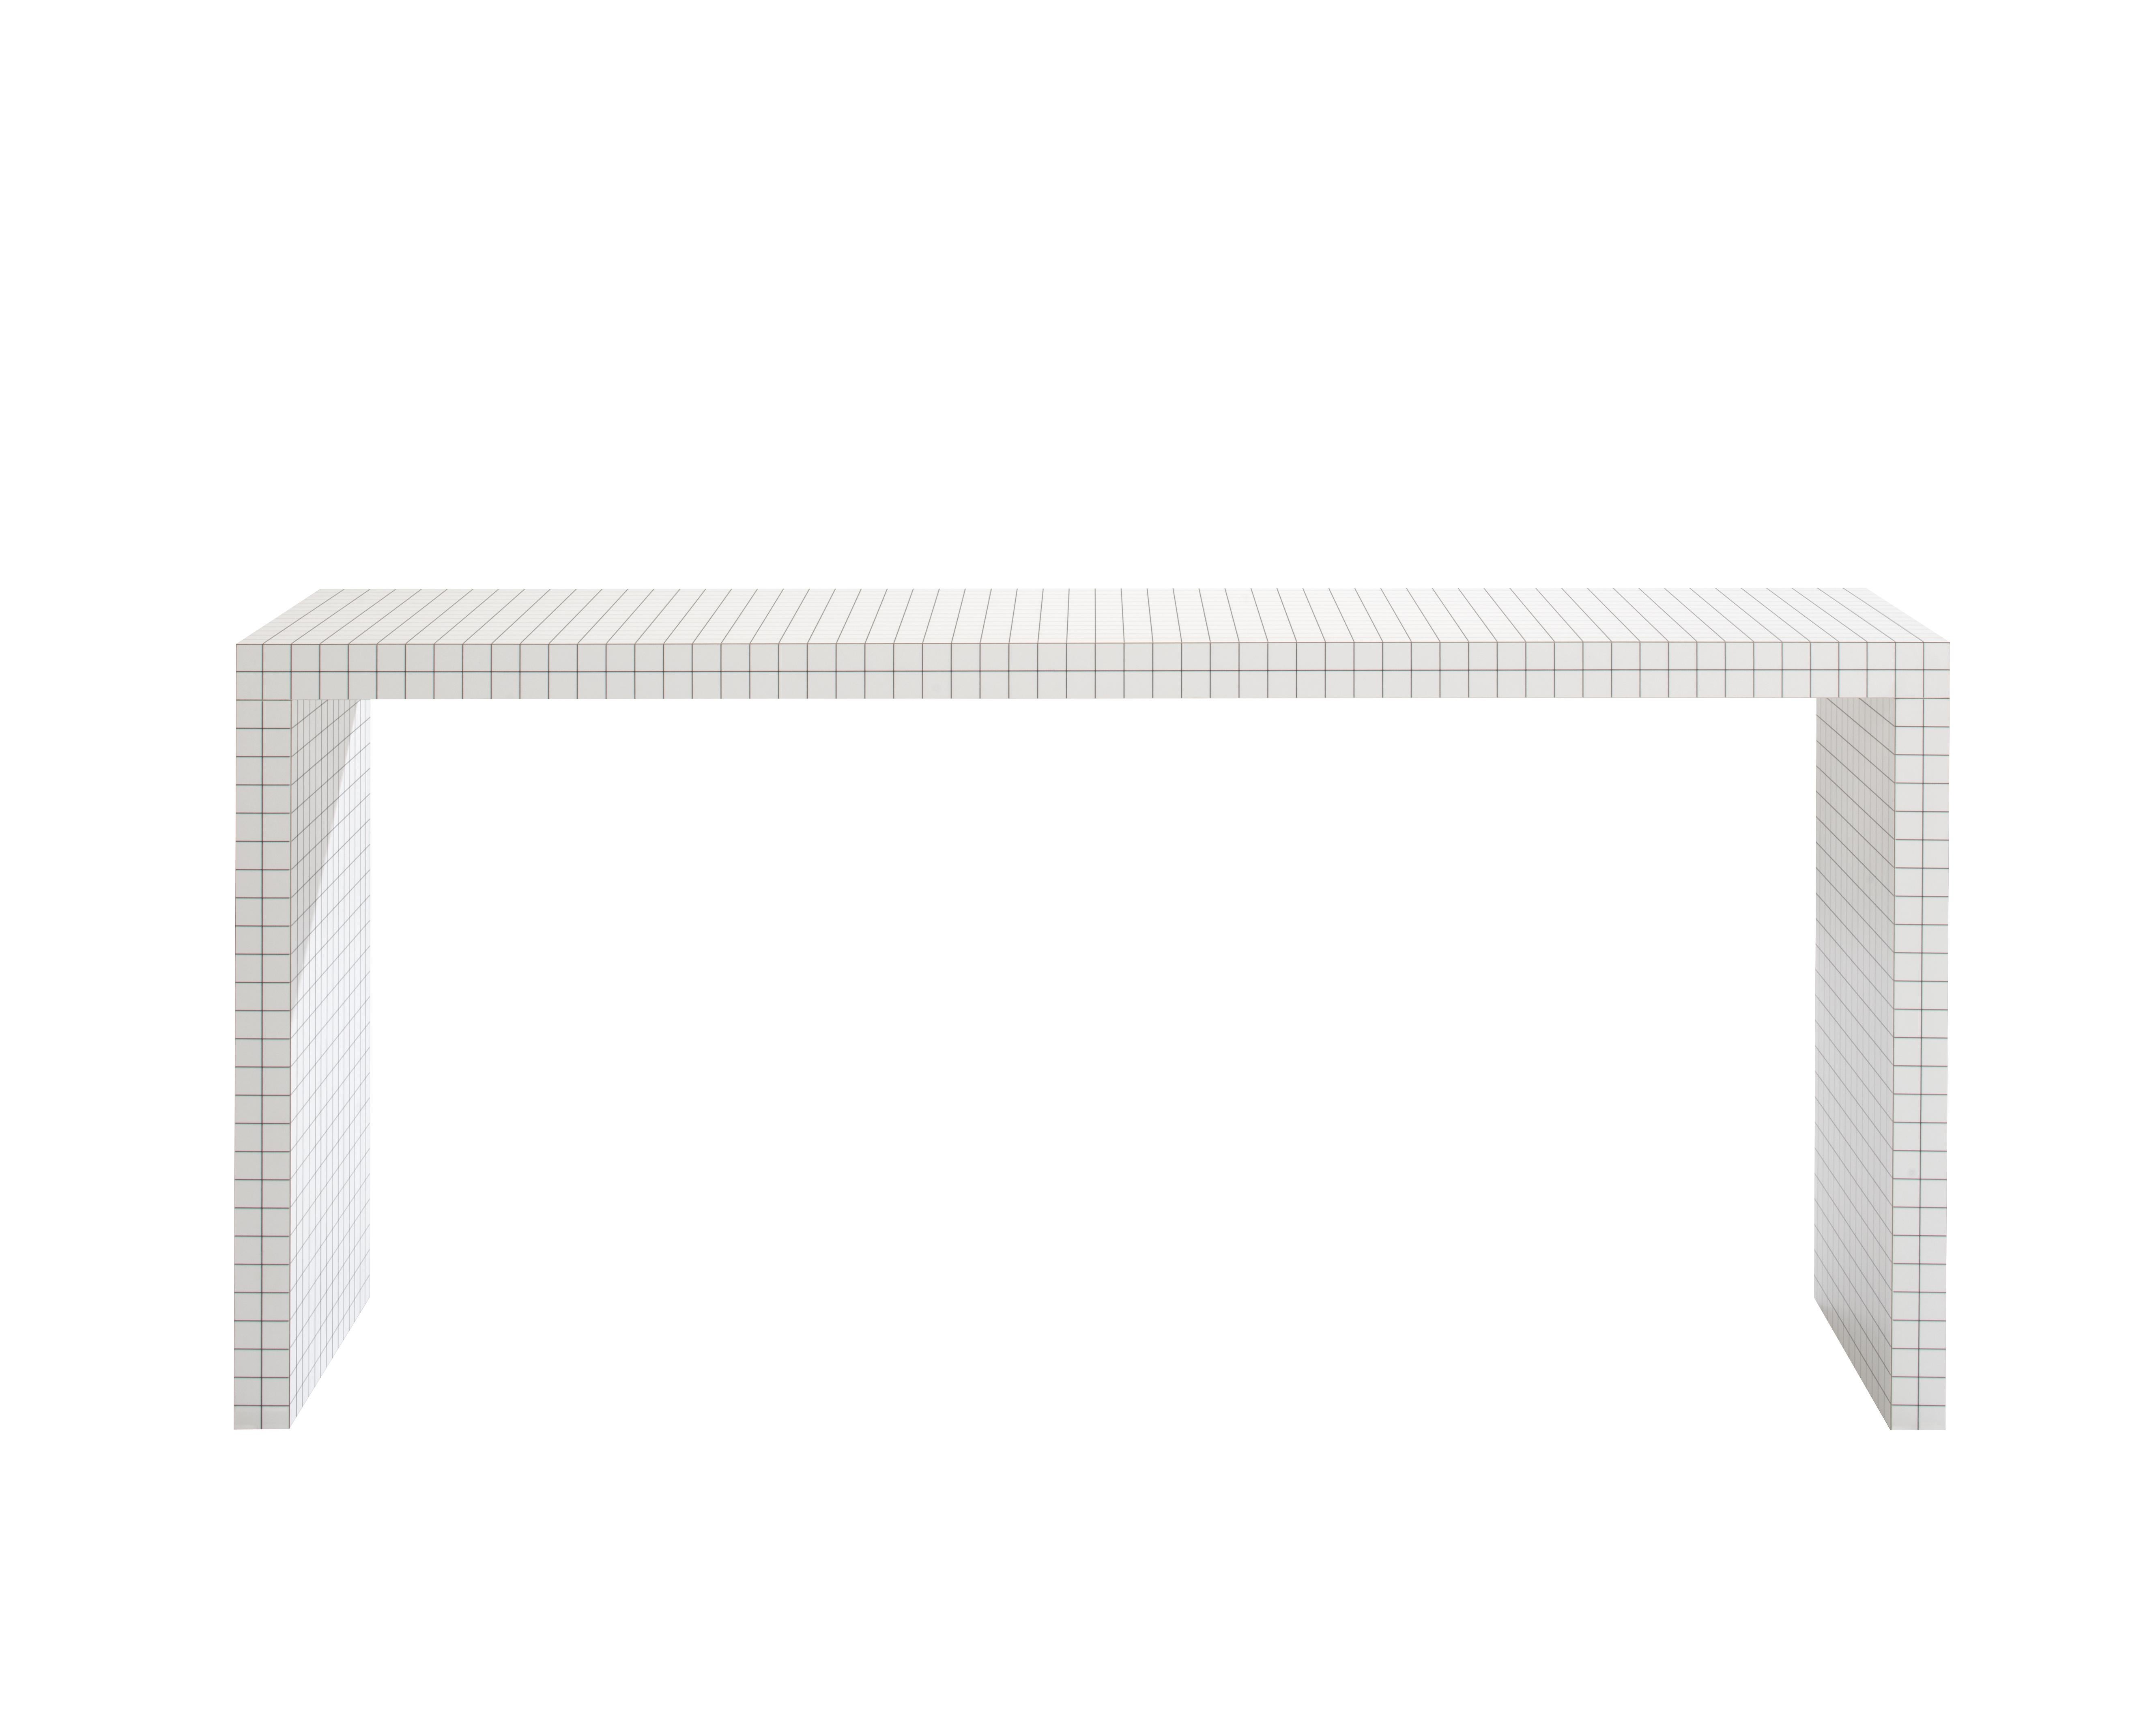 Zanotta Quaderna 710 Console Table in White Plastic Laminate by Superstudio For Sale 4